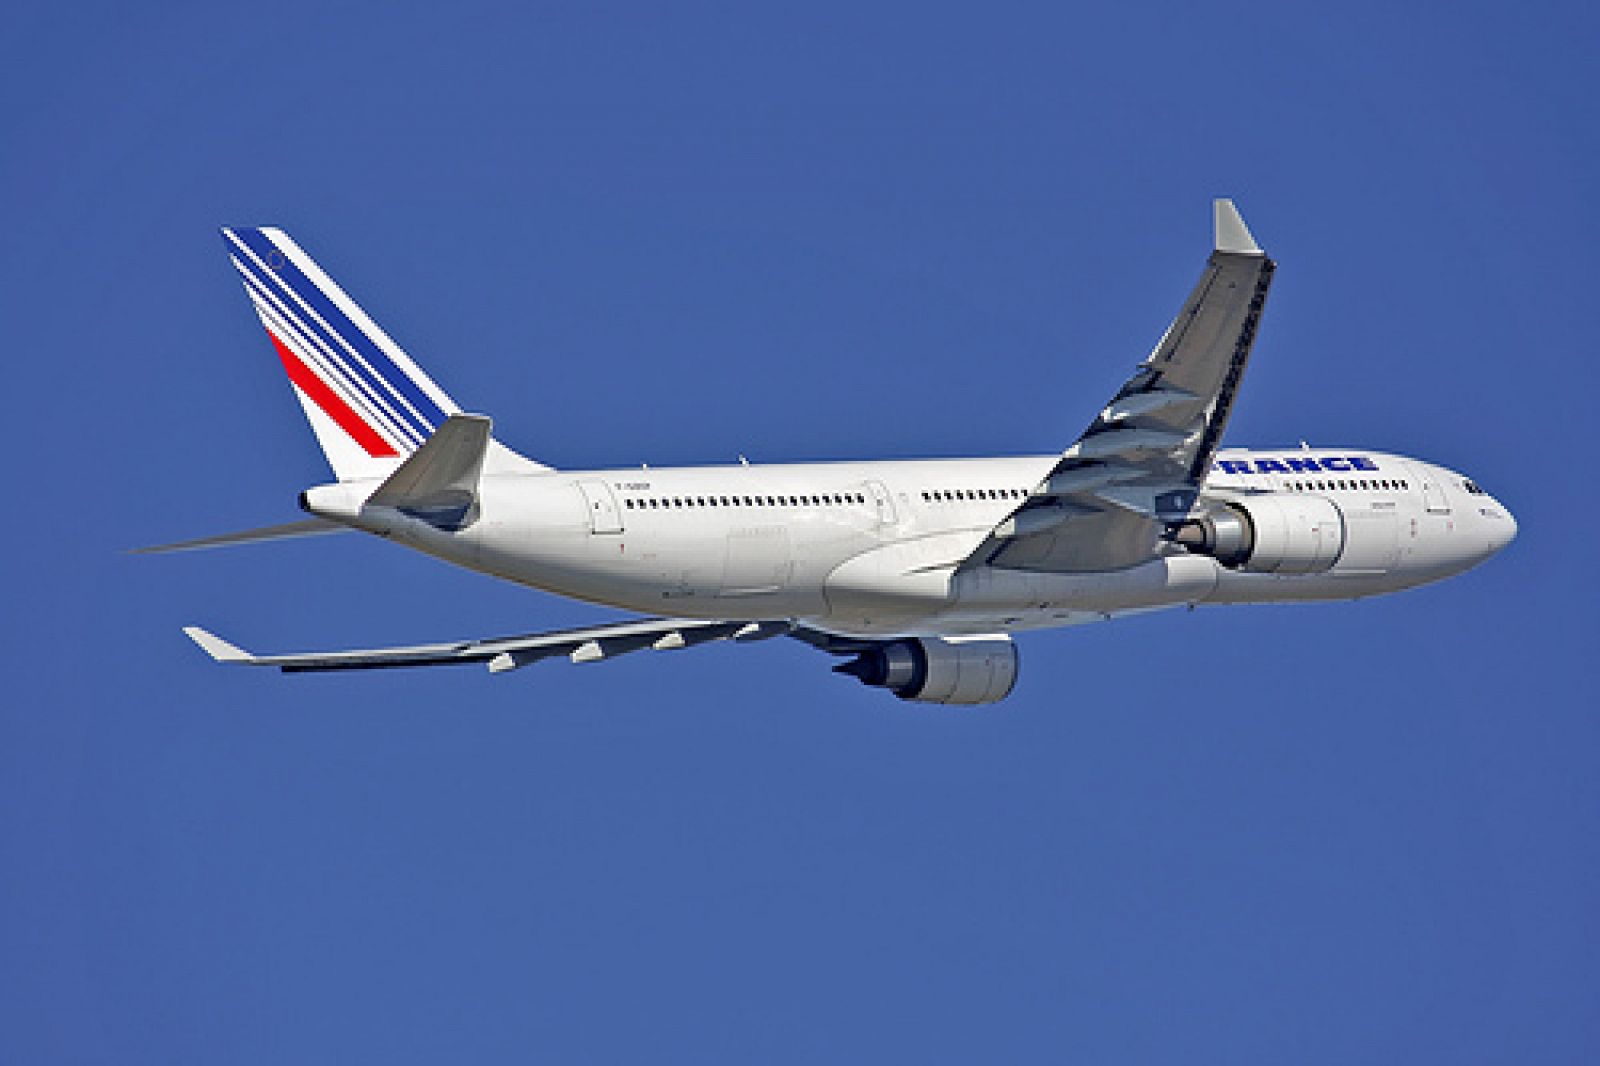 El avión siniestrado Air France F-GZCP, en una foto de 2007 en París.